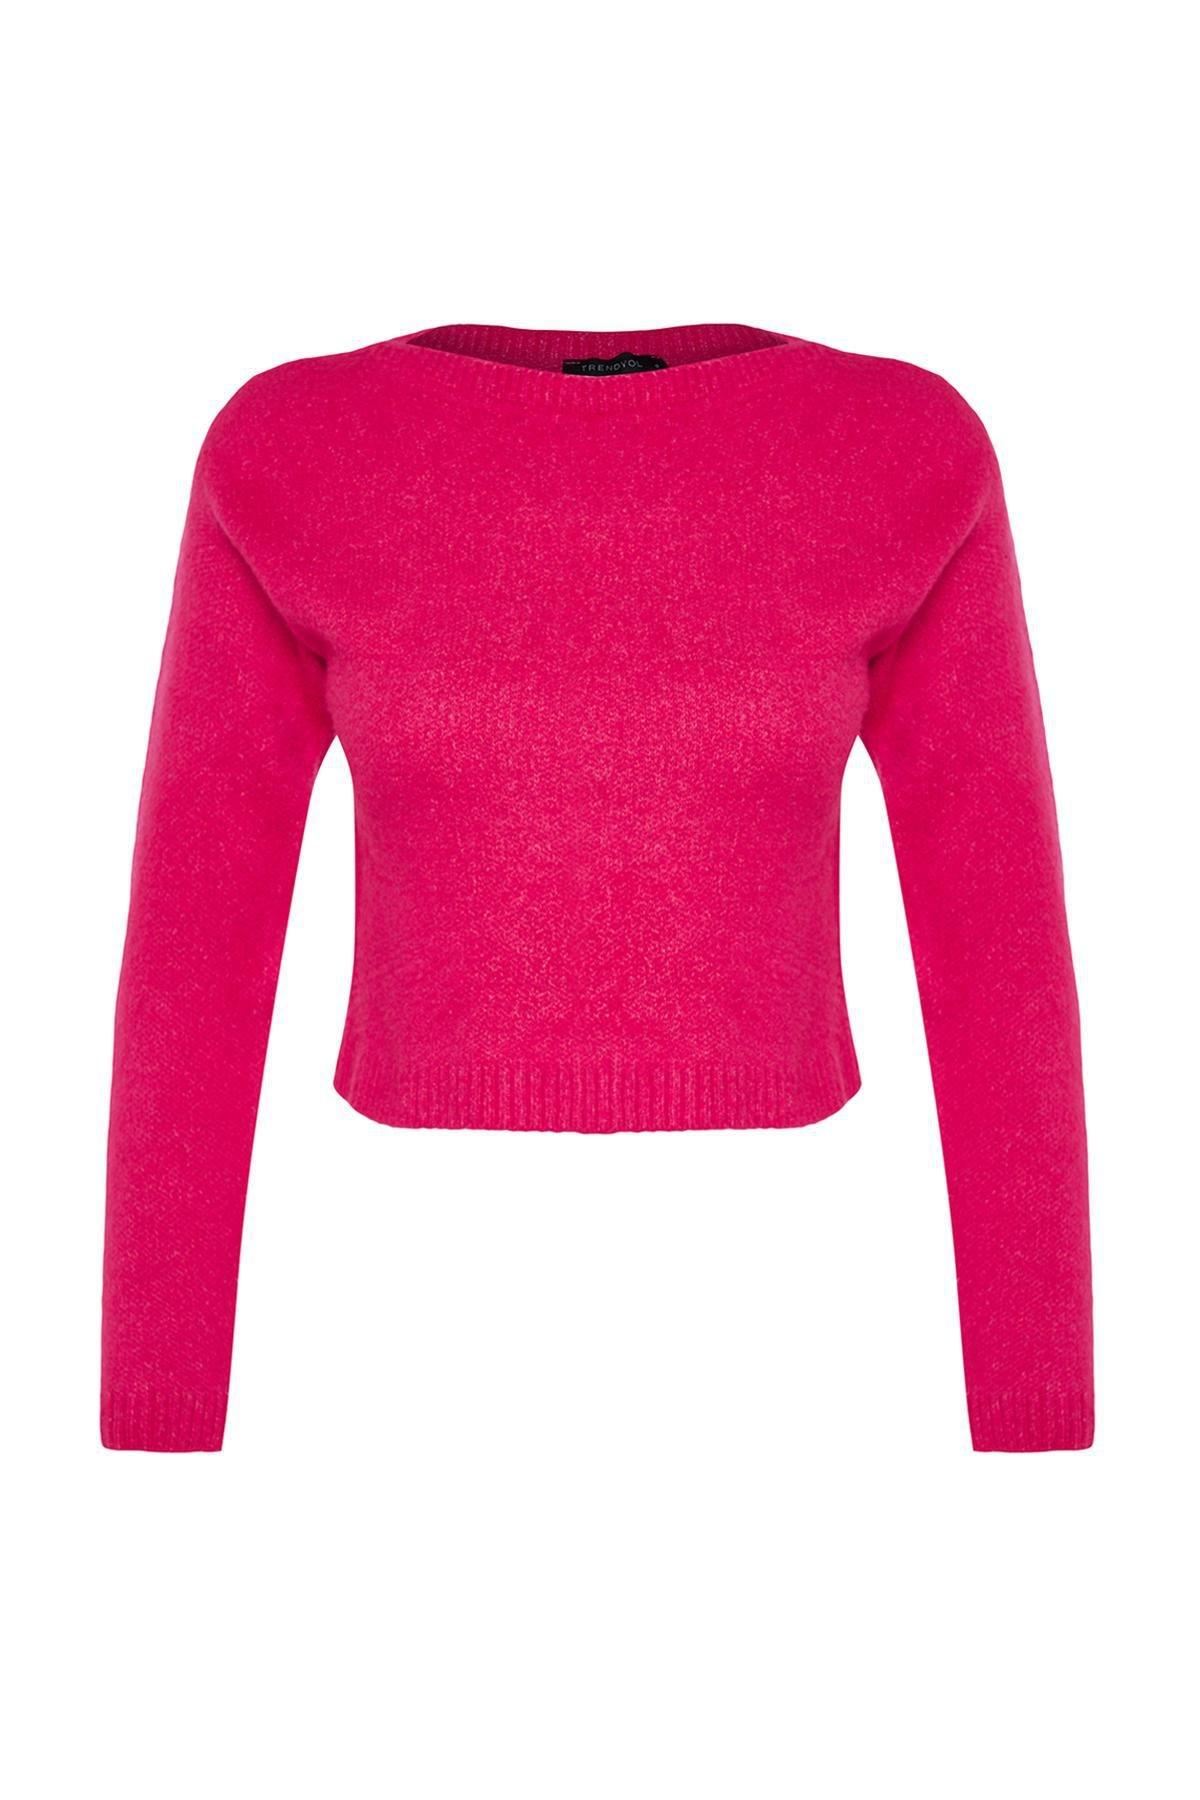 Trendyol - Purple Crop Soft Texture Knitwear Sweater